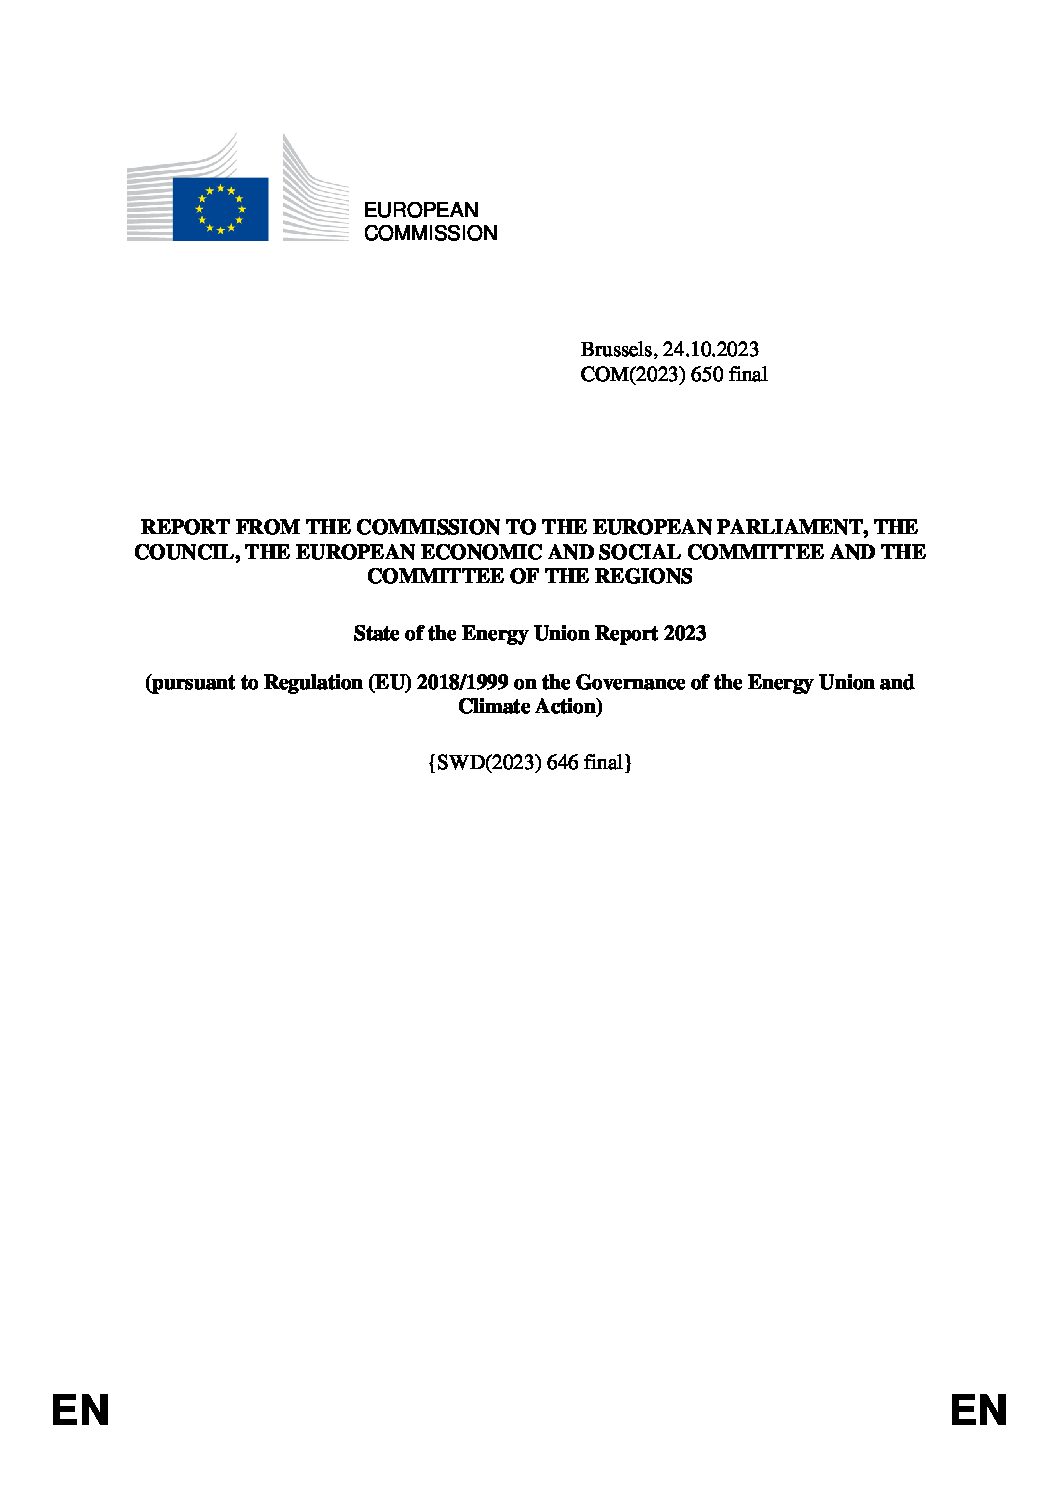 https://img.saurenergy.com/2023/10/eu-parliment-report-1-pdf.jpg